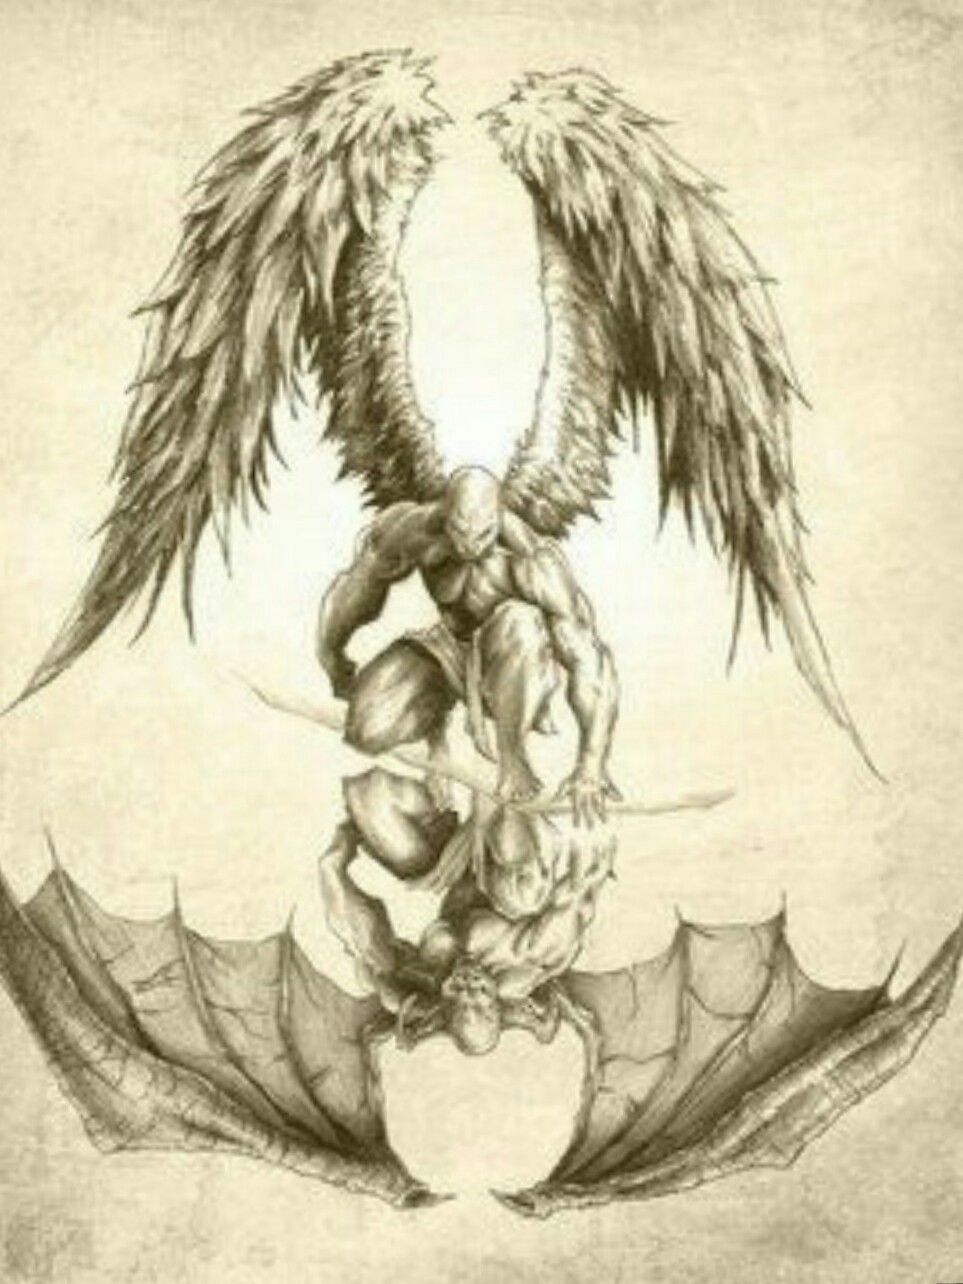 Angels e Demons tatuagens Sleeve Sleeve foto compartilhado por Bibbye185   Português de partilha de imagens imagens